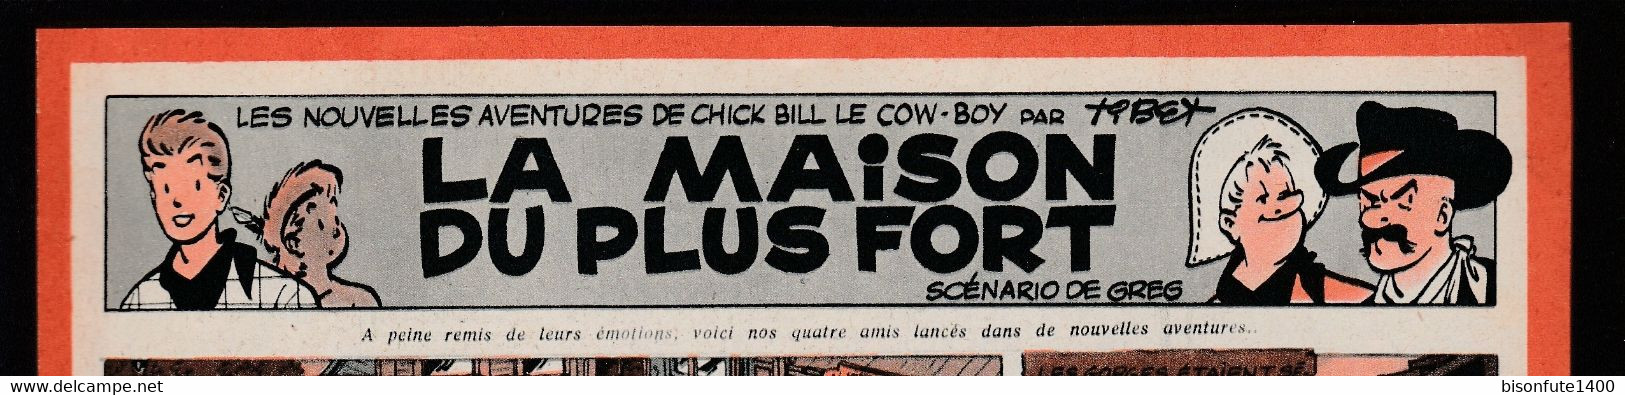 Bandeau Titre De Chick Bill "La Maison Du Plus Fort" Datant De 1958 Et Inédit Dans Les Bandes Dessinées En Album. - Chick Bill